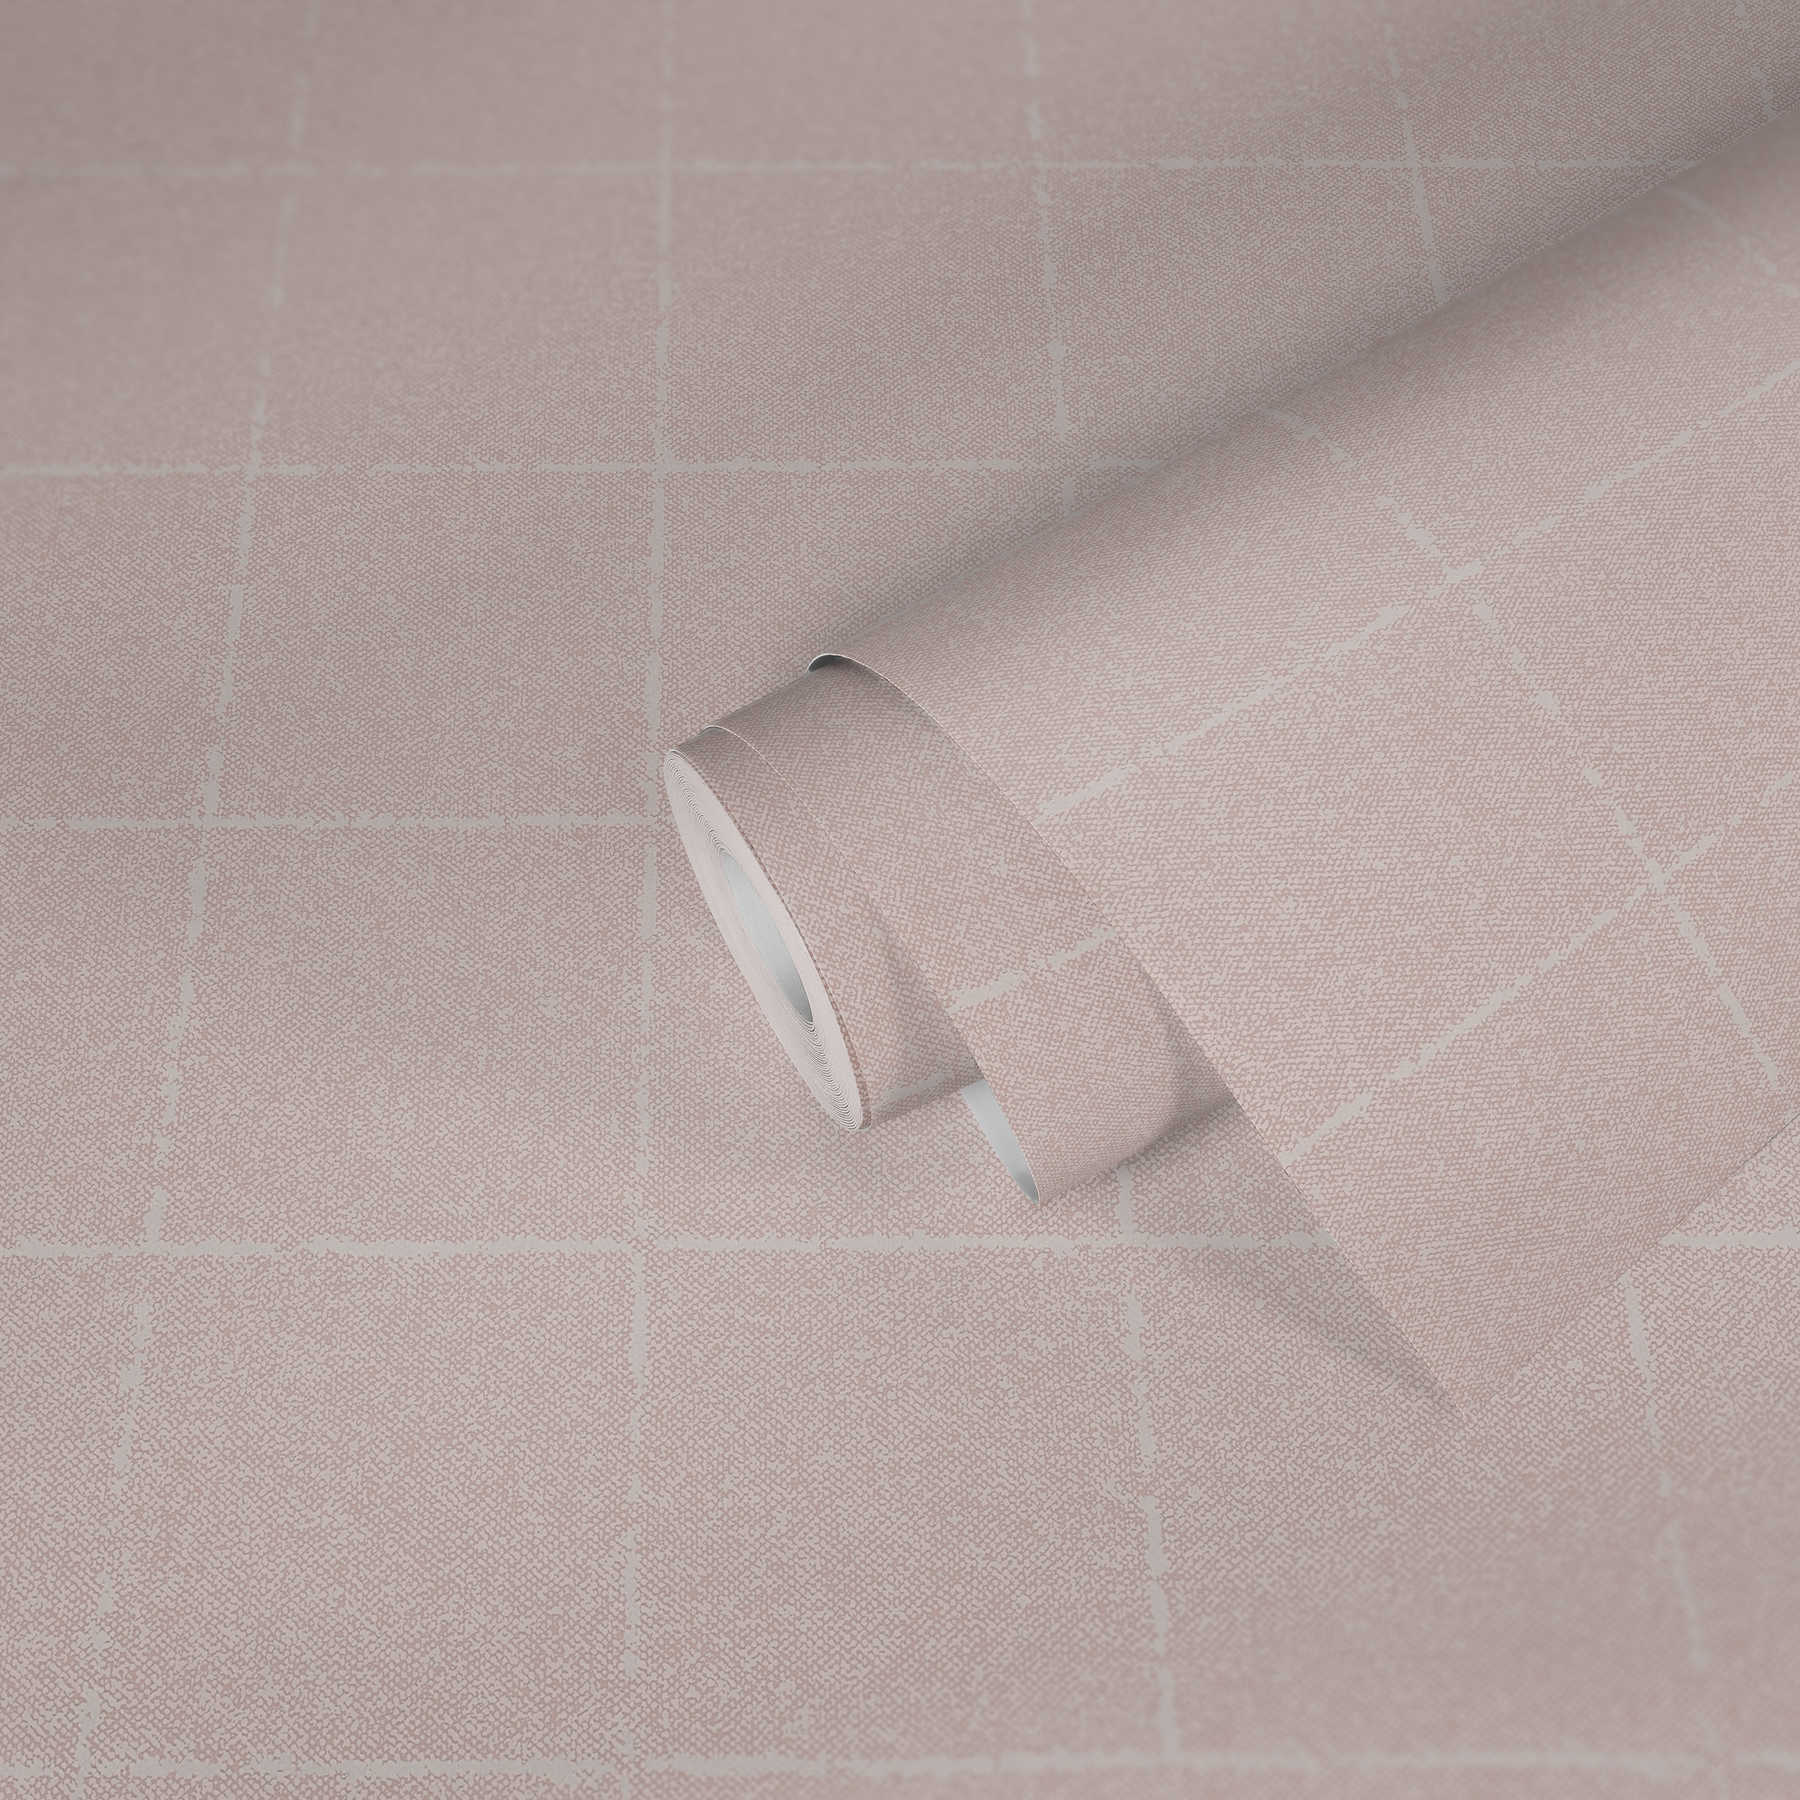             Karierte Tapete im Textil-Optik, strukturiert – Rosa, Weiß, Creme
        